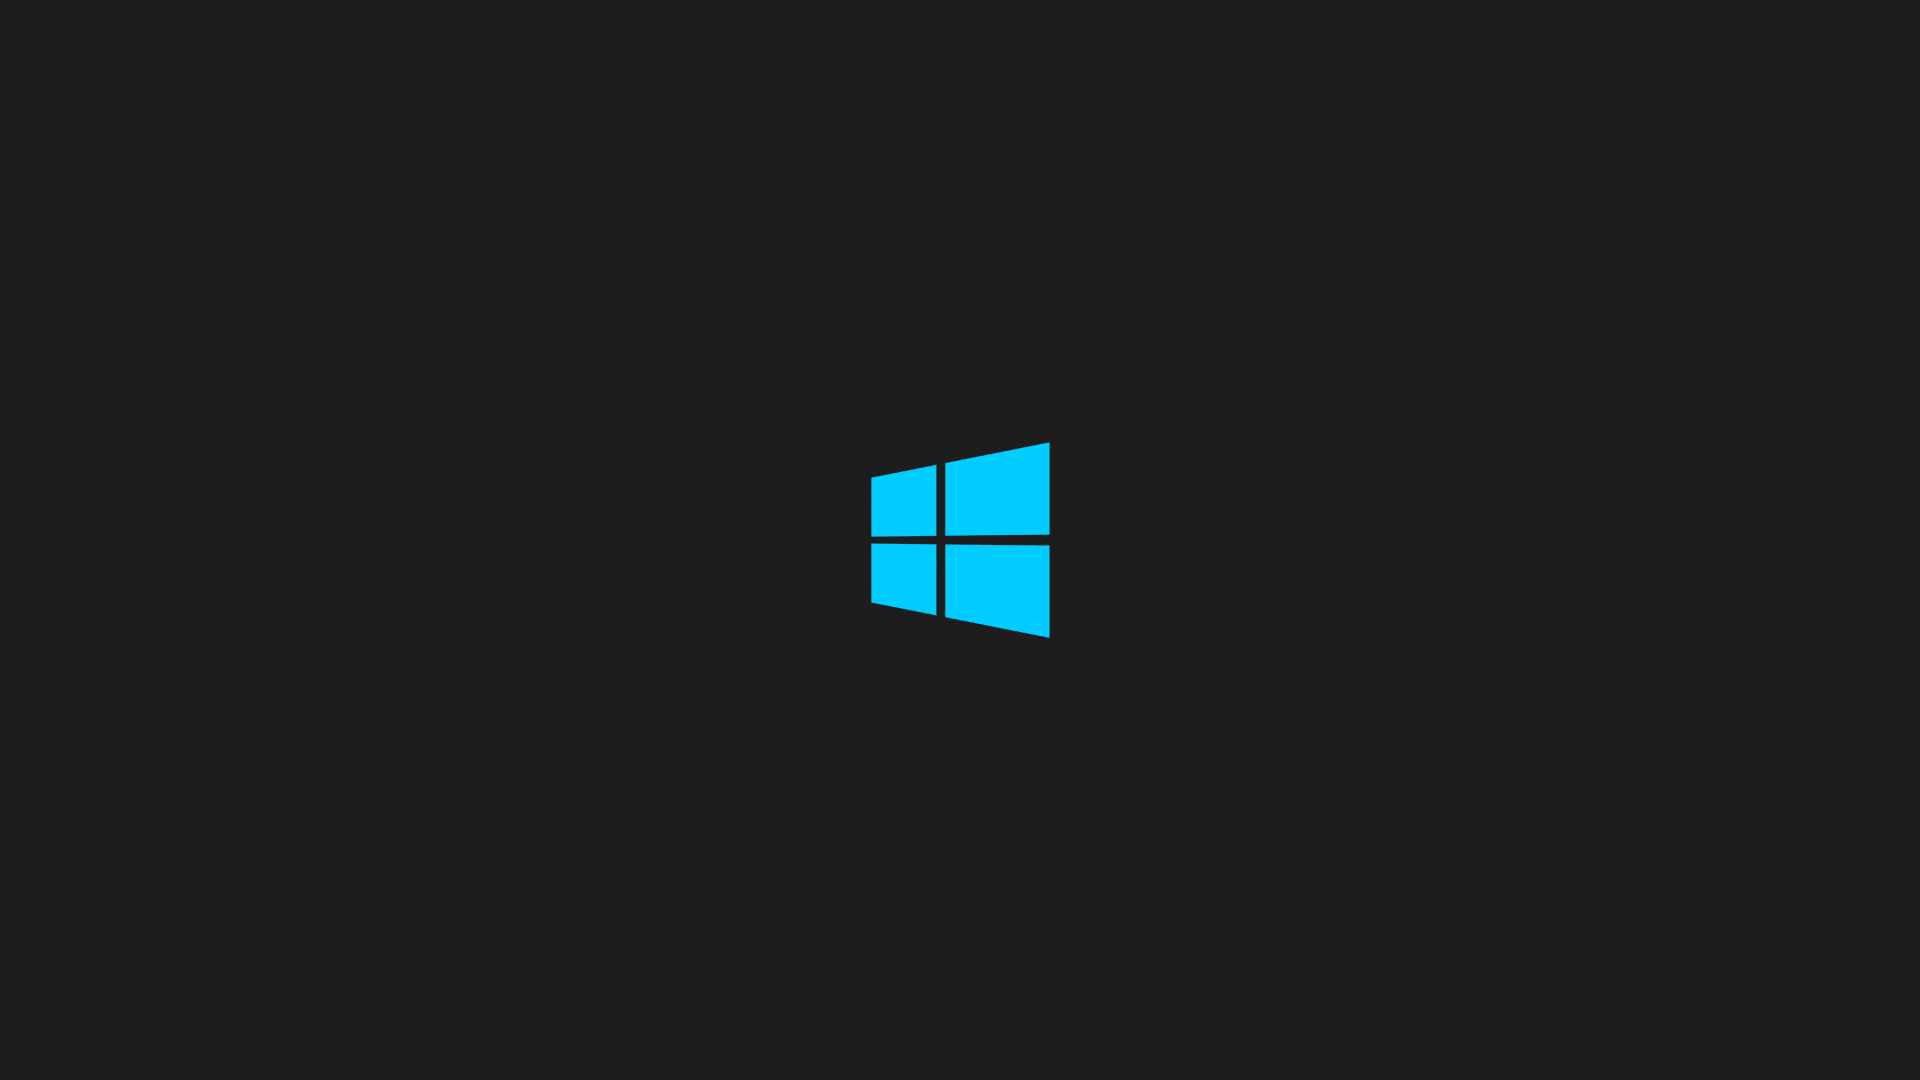 Dark Windows Logo Wallpaper Free Dark Windows Logo Background